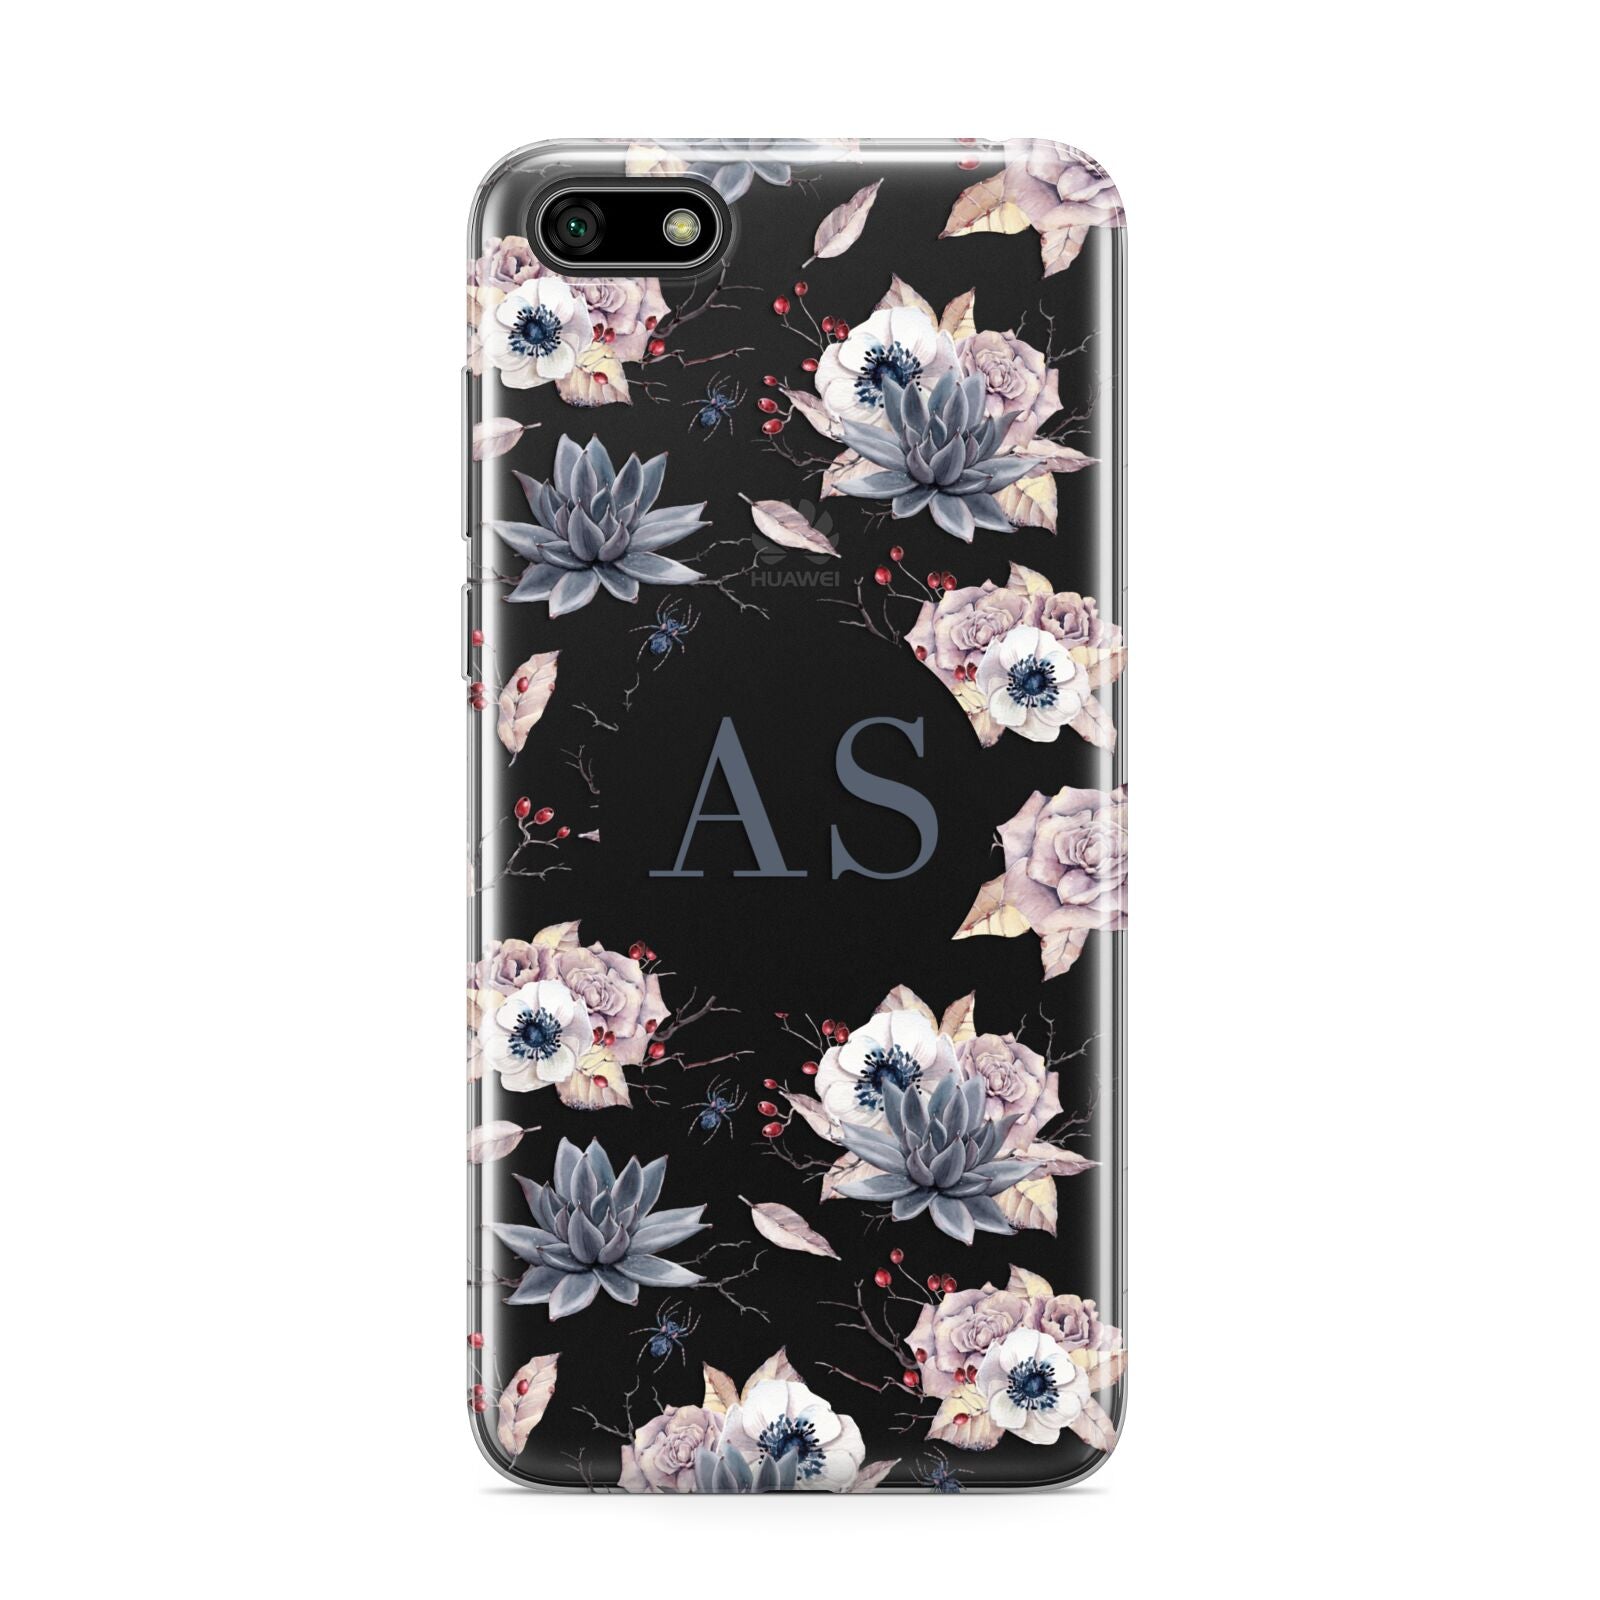 Personalised Halloween Floral Huawei Y5 Prime 2018 Phone Case